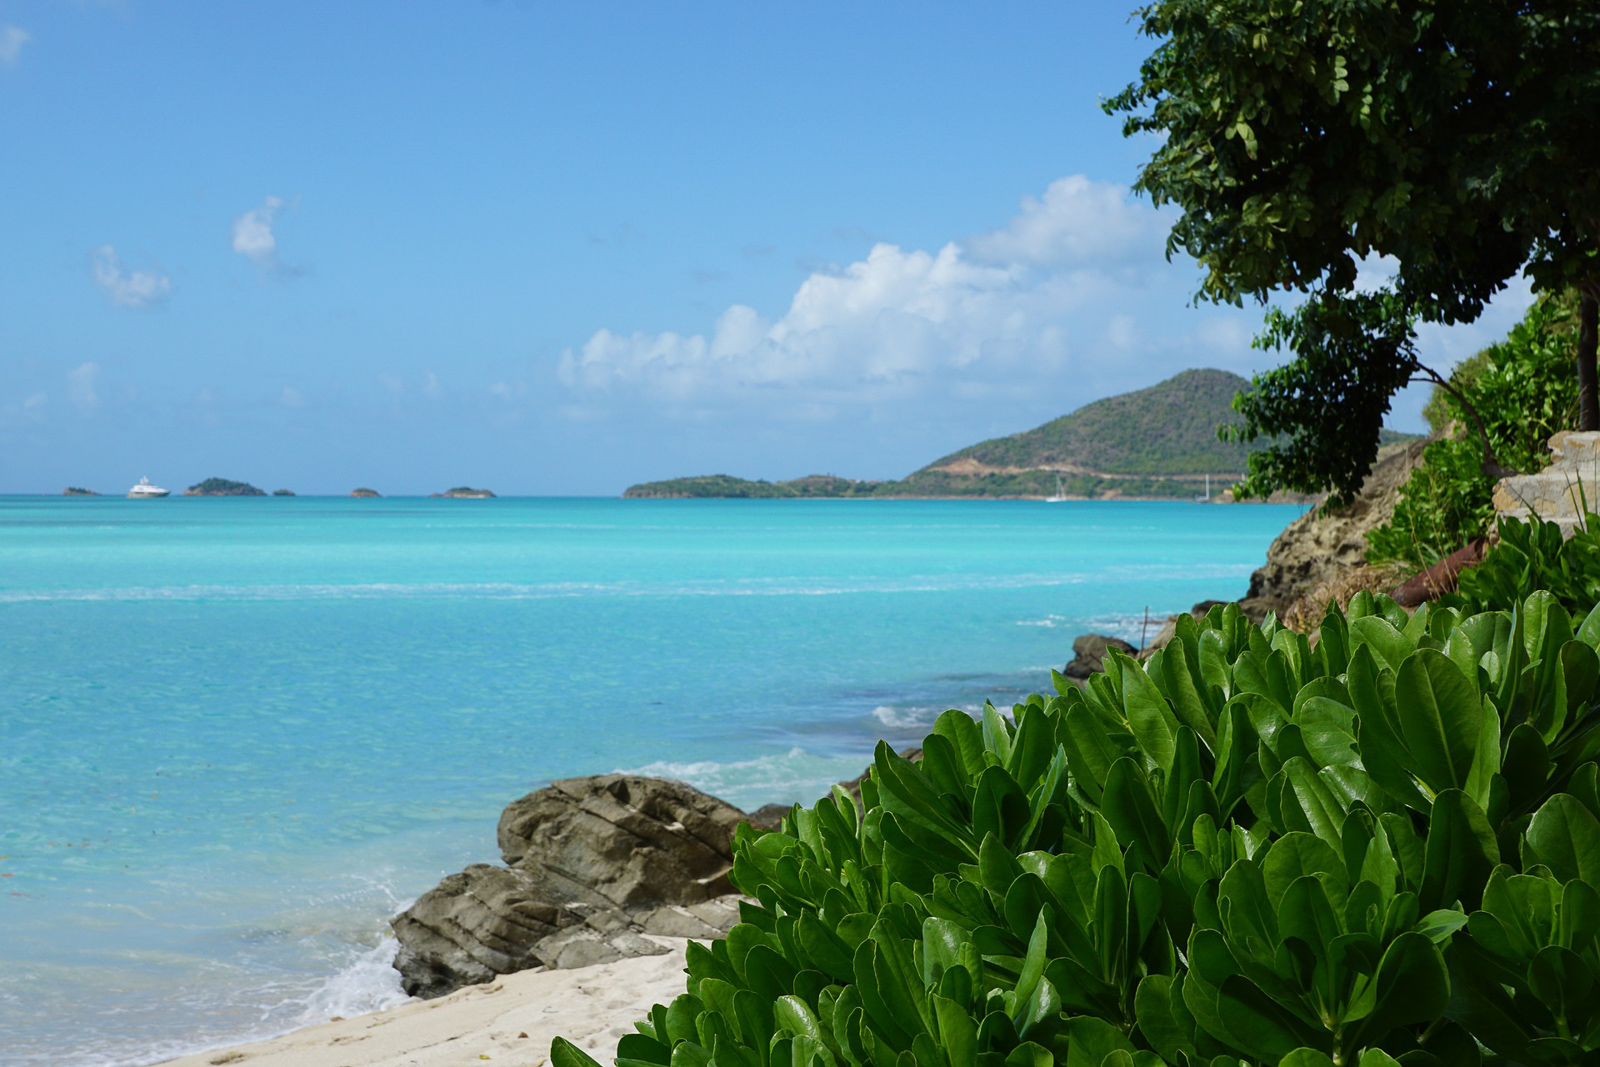 Antigua Travel Guide - Reisebericht - Kleine Antillen - Karibik Reise - Sehenswertes und Wissenswertes über die Insel - Reise Tipps - Must Sees und Sehenswürdigkeiten - Traumstrände in der Karibik - Fashionladyloves by Tamara Wagner Travel Blog - Reiseblogger